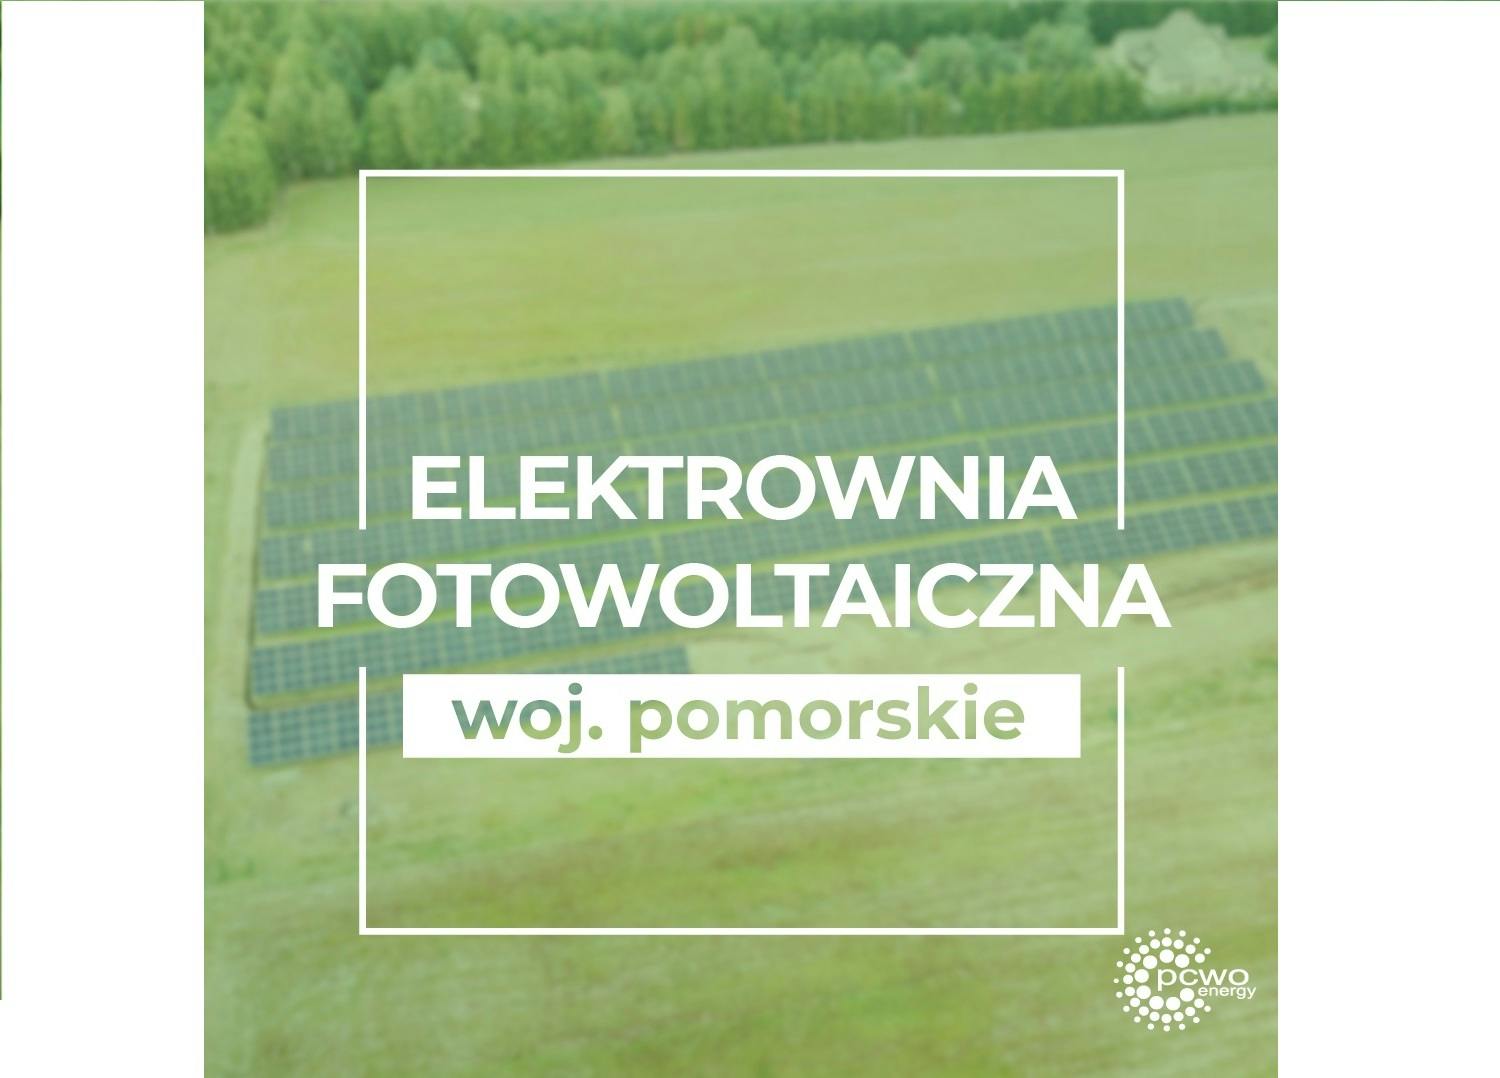 Cover Image for Farma fotowoltaiczna woj. pomorskie – zakończenie montażu paneli